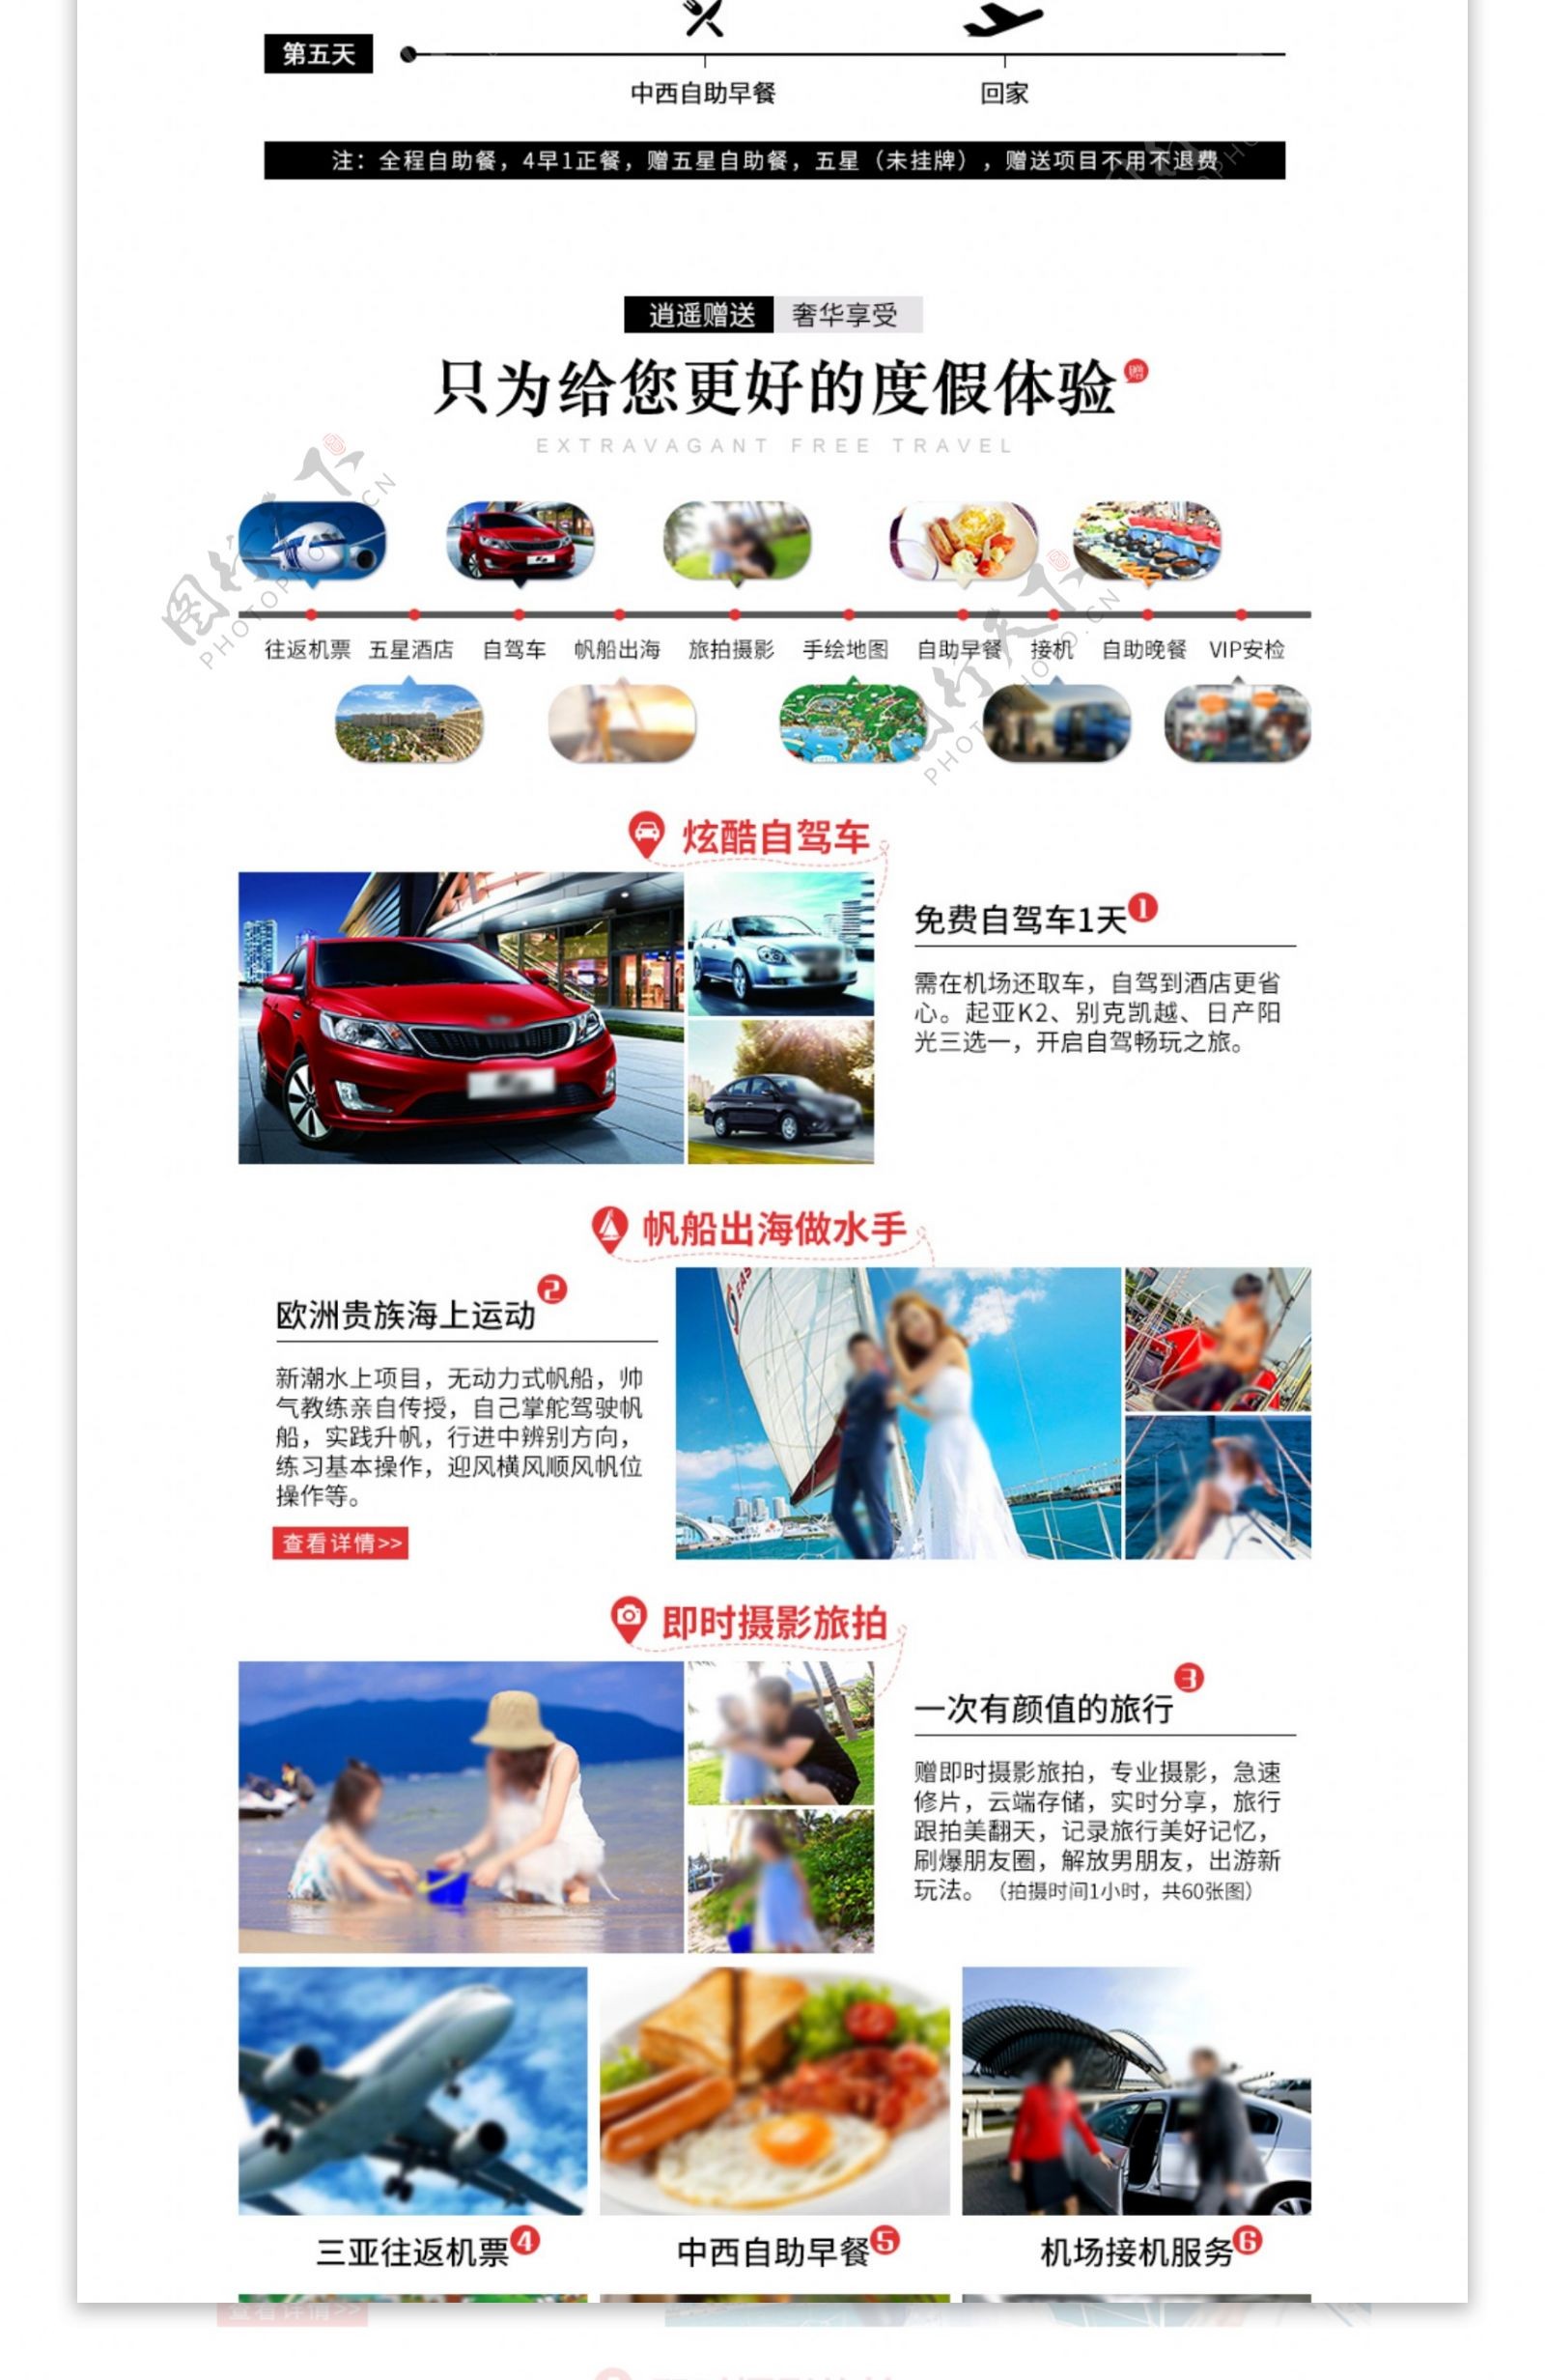 天猫淘宝三亚旅游旅行详情页模板